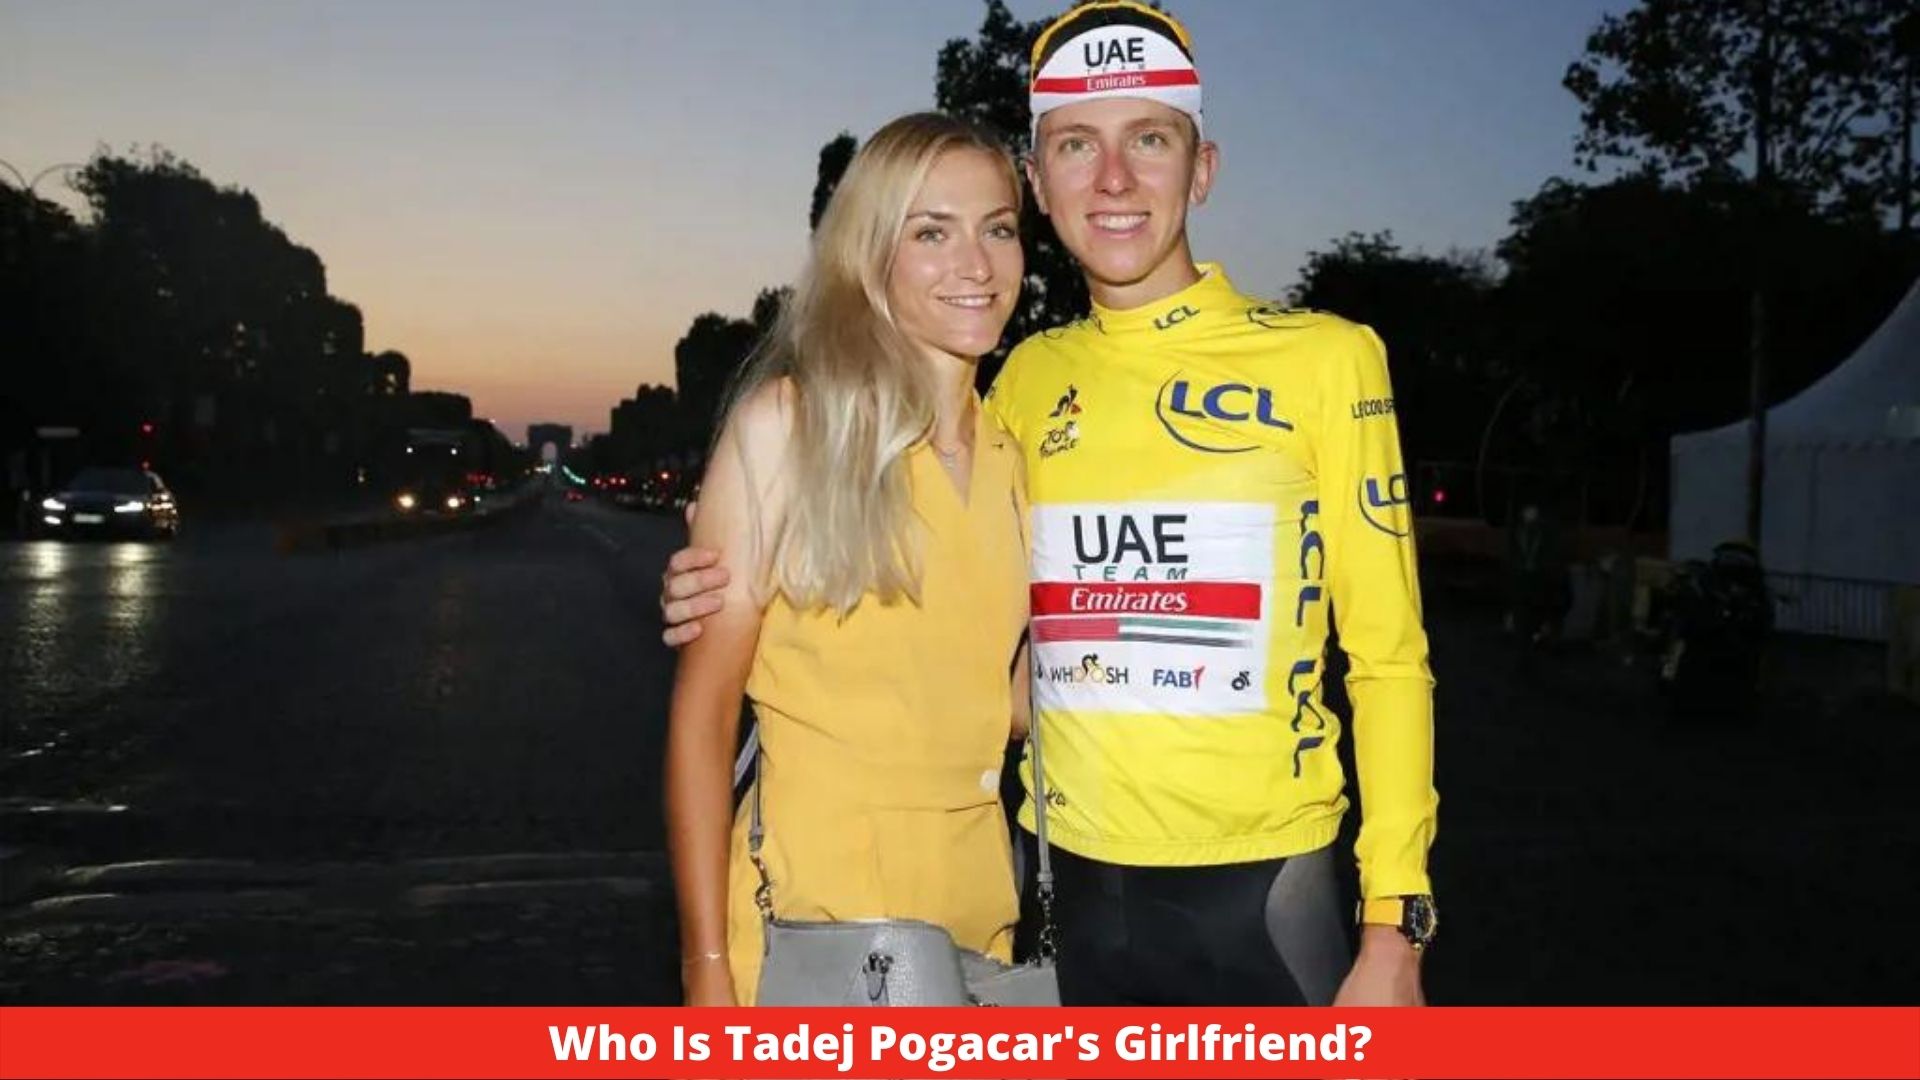 Who Is Tadej Pogacar's Girlfriend?